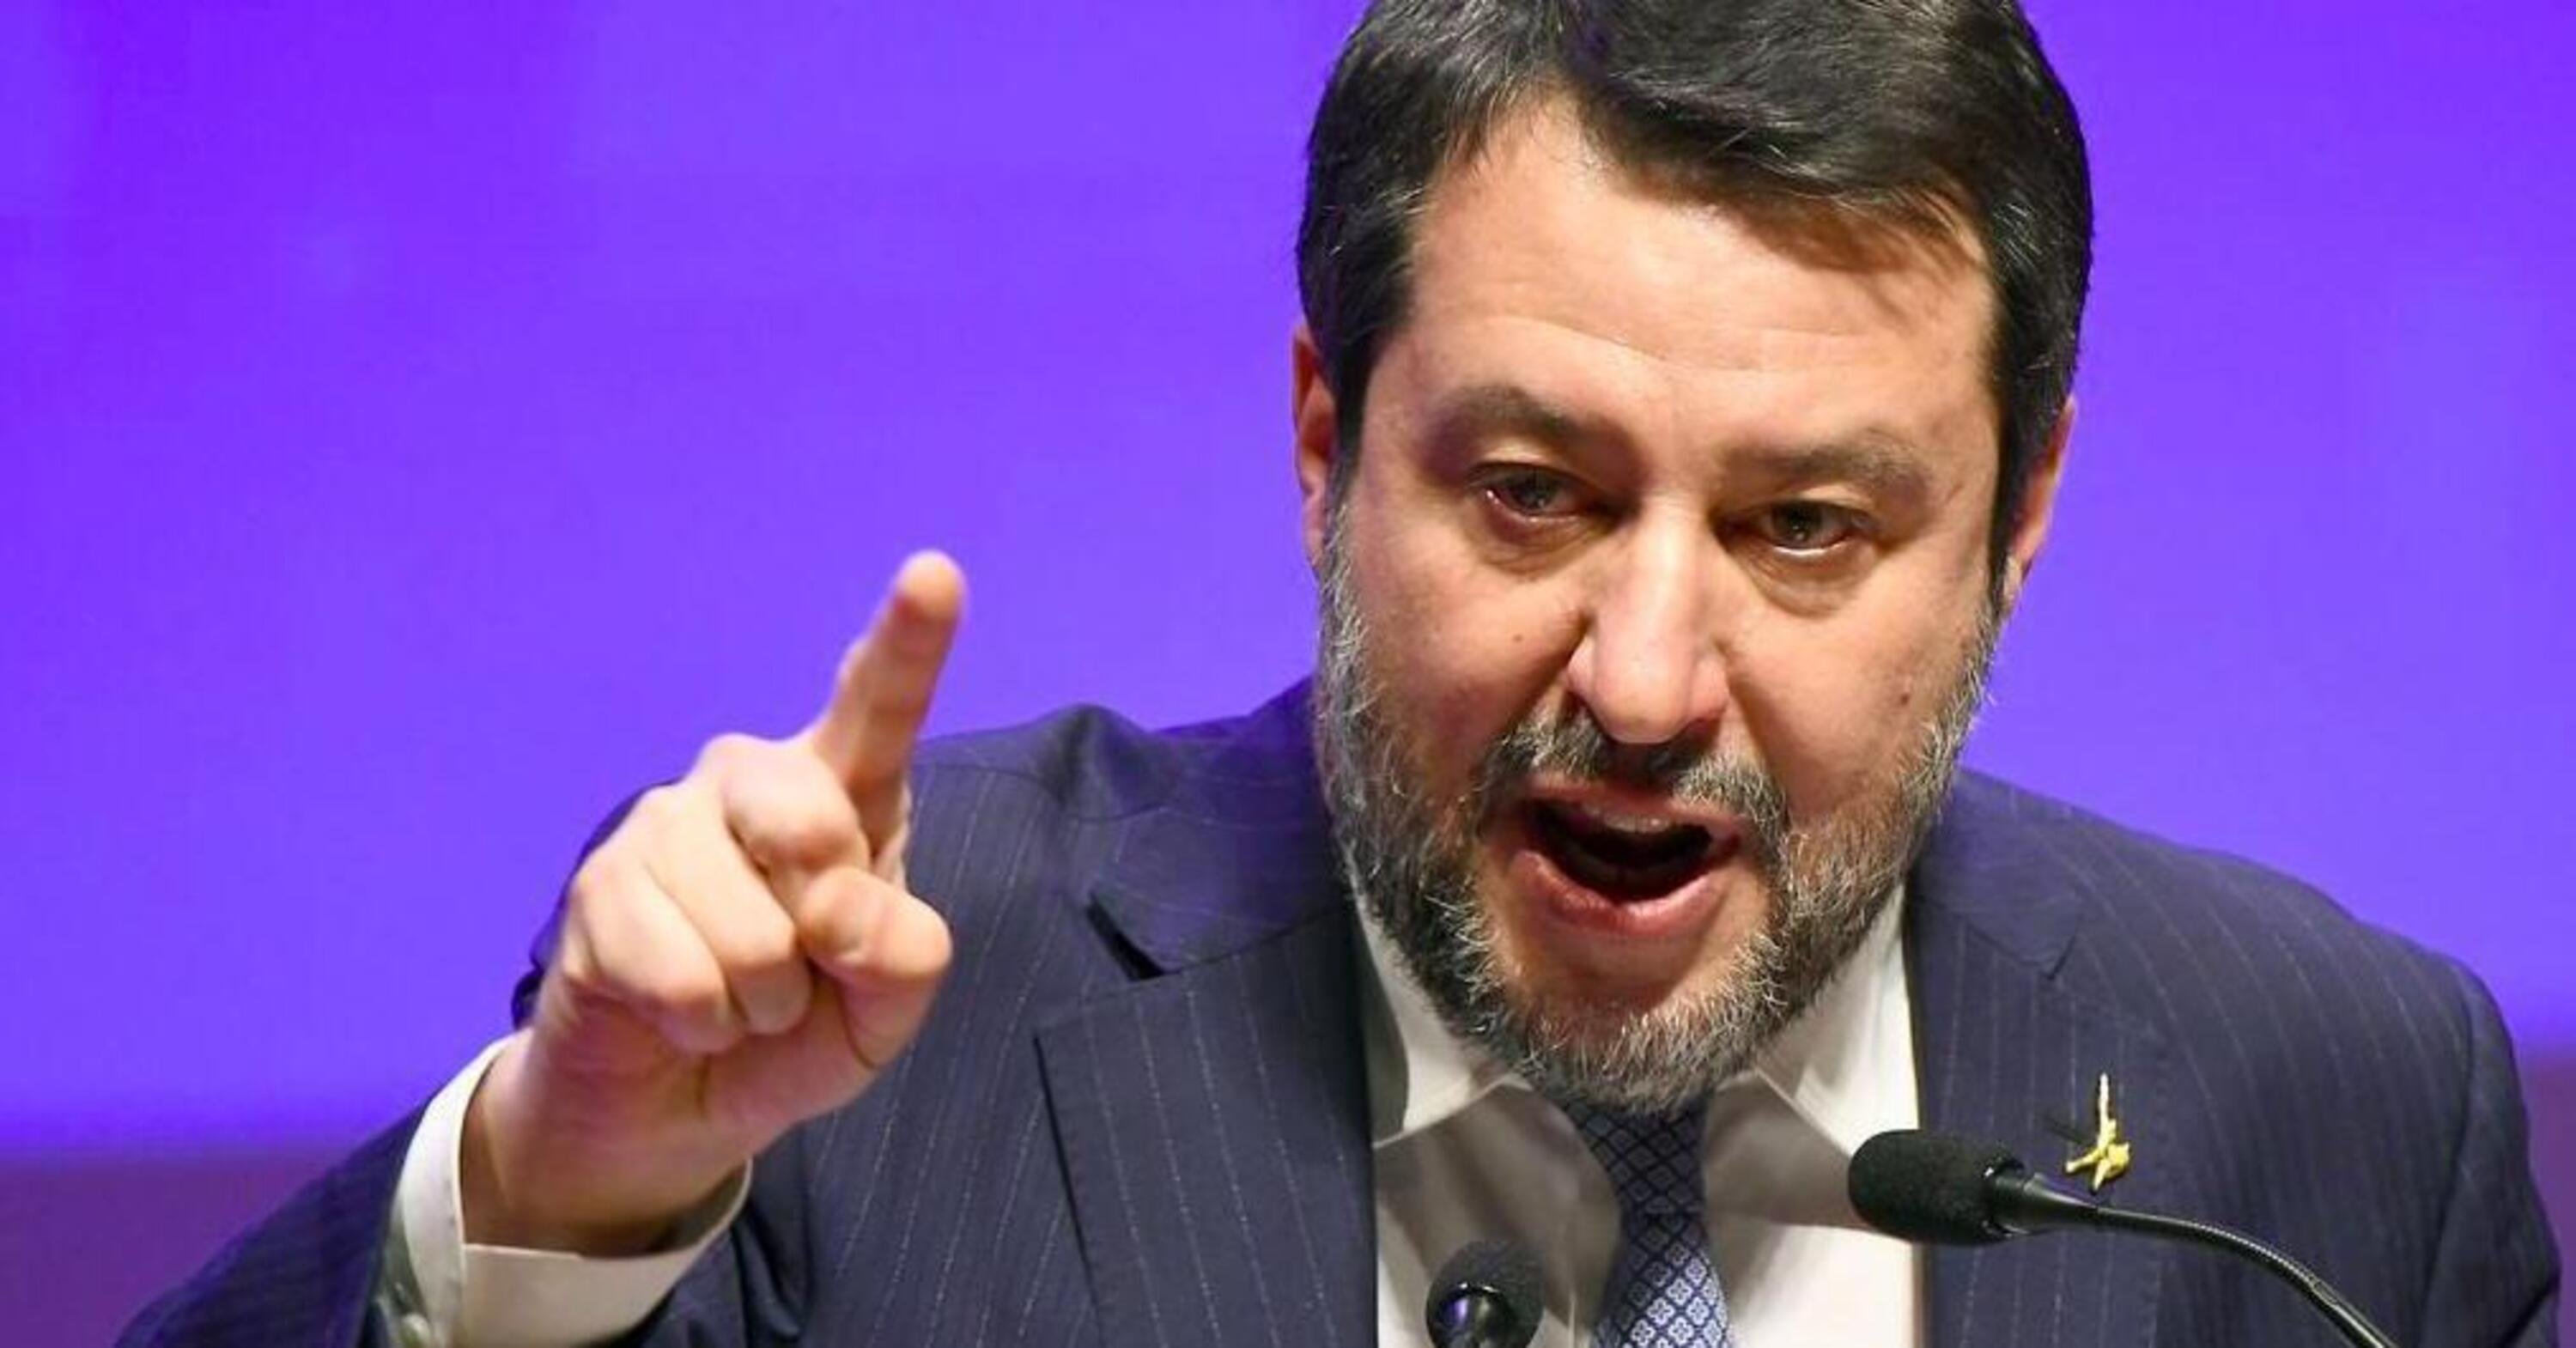 Caro carburanti. Matteo Salvini: &ldquo;Sopra i due euro interverremo con taglio accise&rdquo;